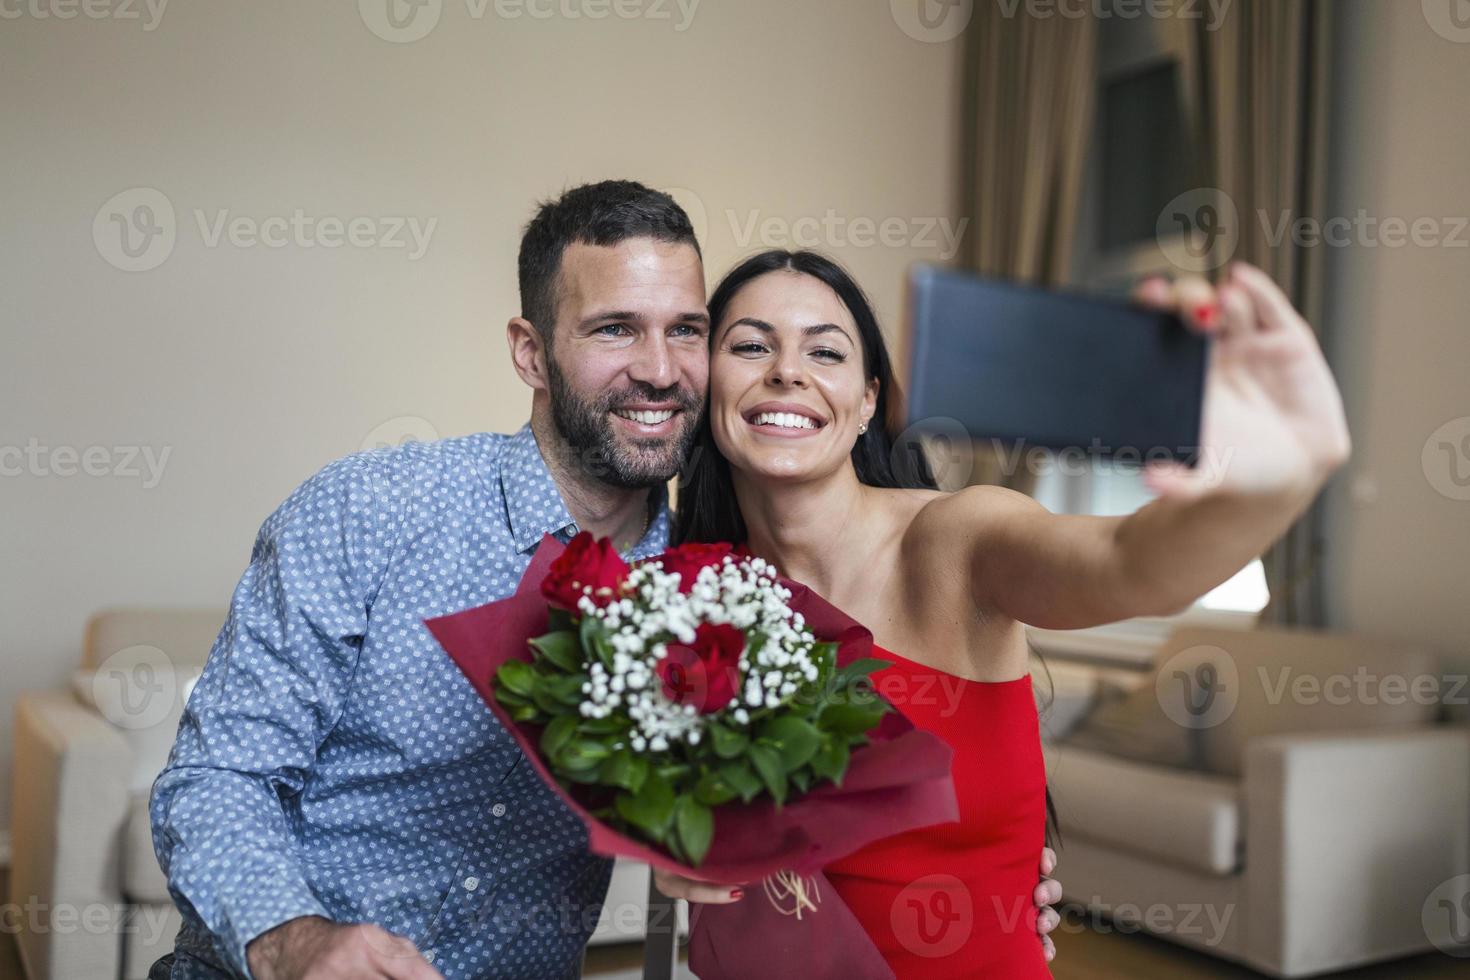 imagen de una pareja joven feliz tomando una foto selfie con flores mientras disfruta de un momento romántico en casa. encantadora pareja celebrando el día de san valentín